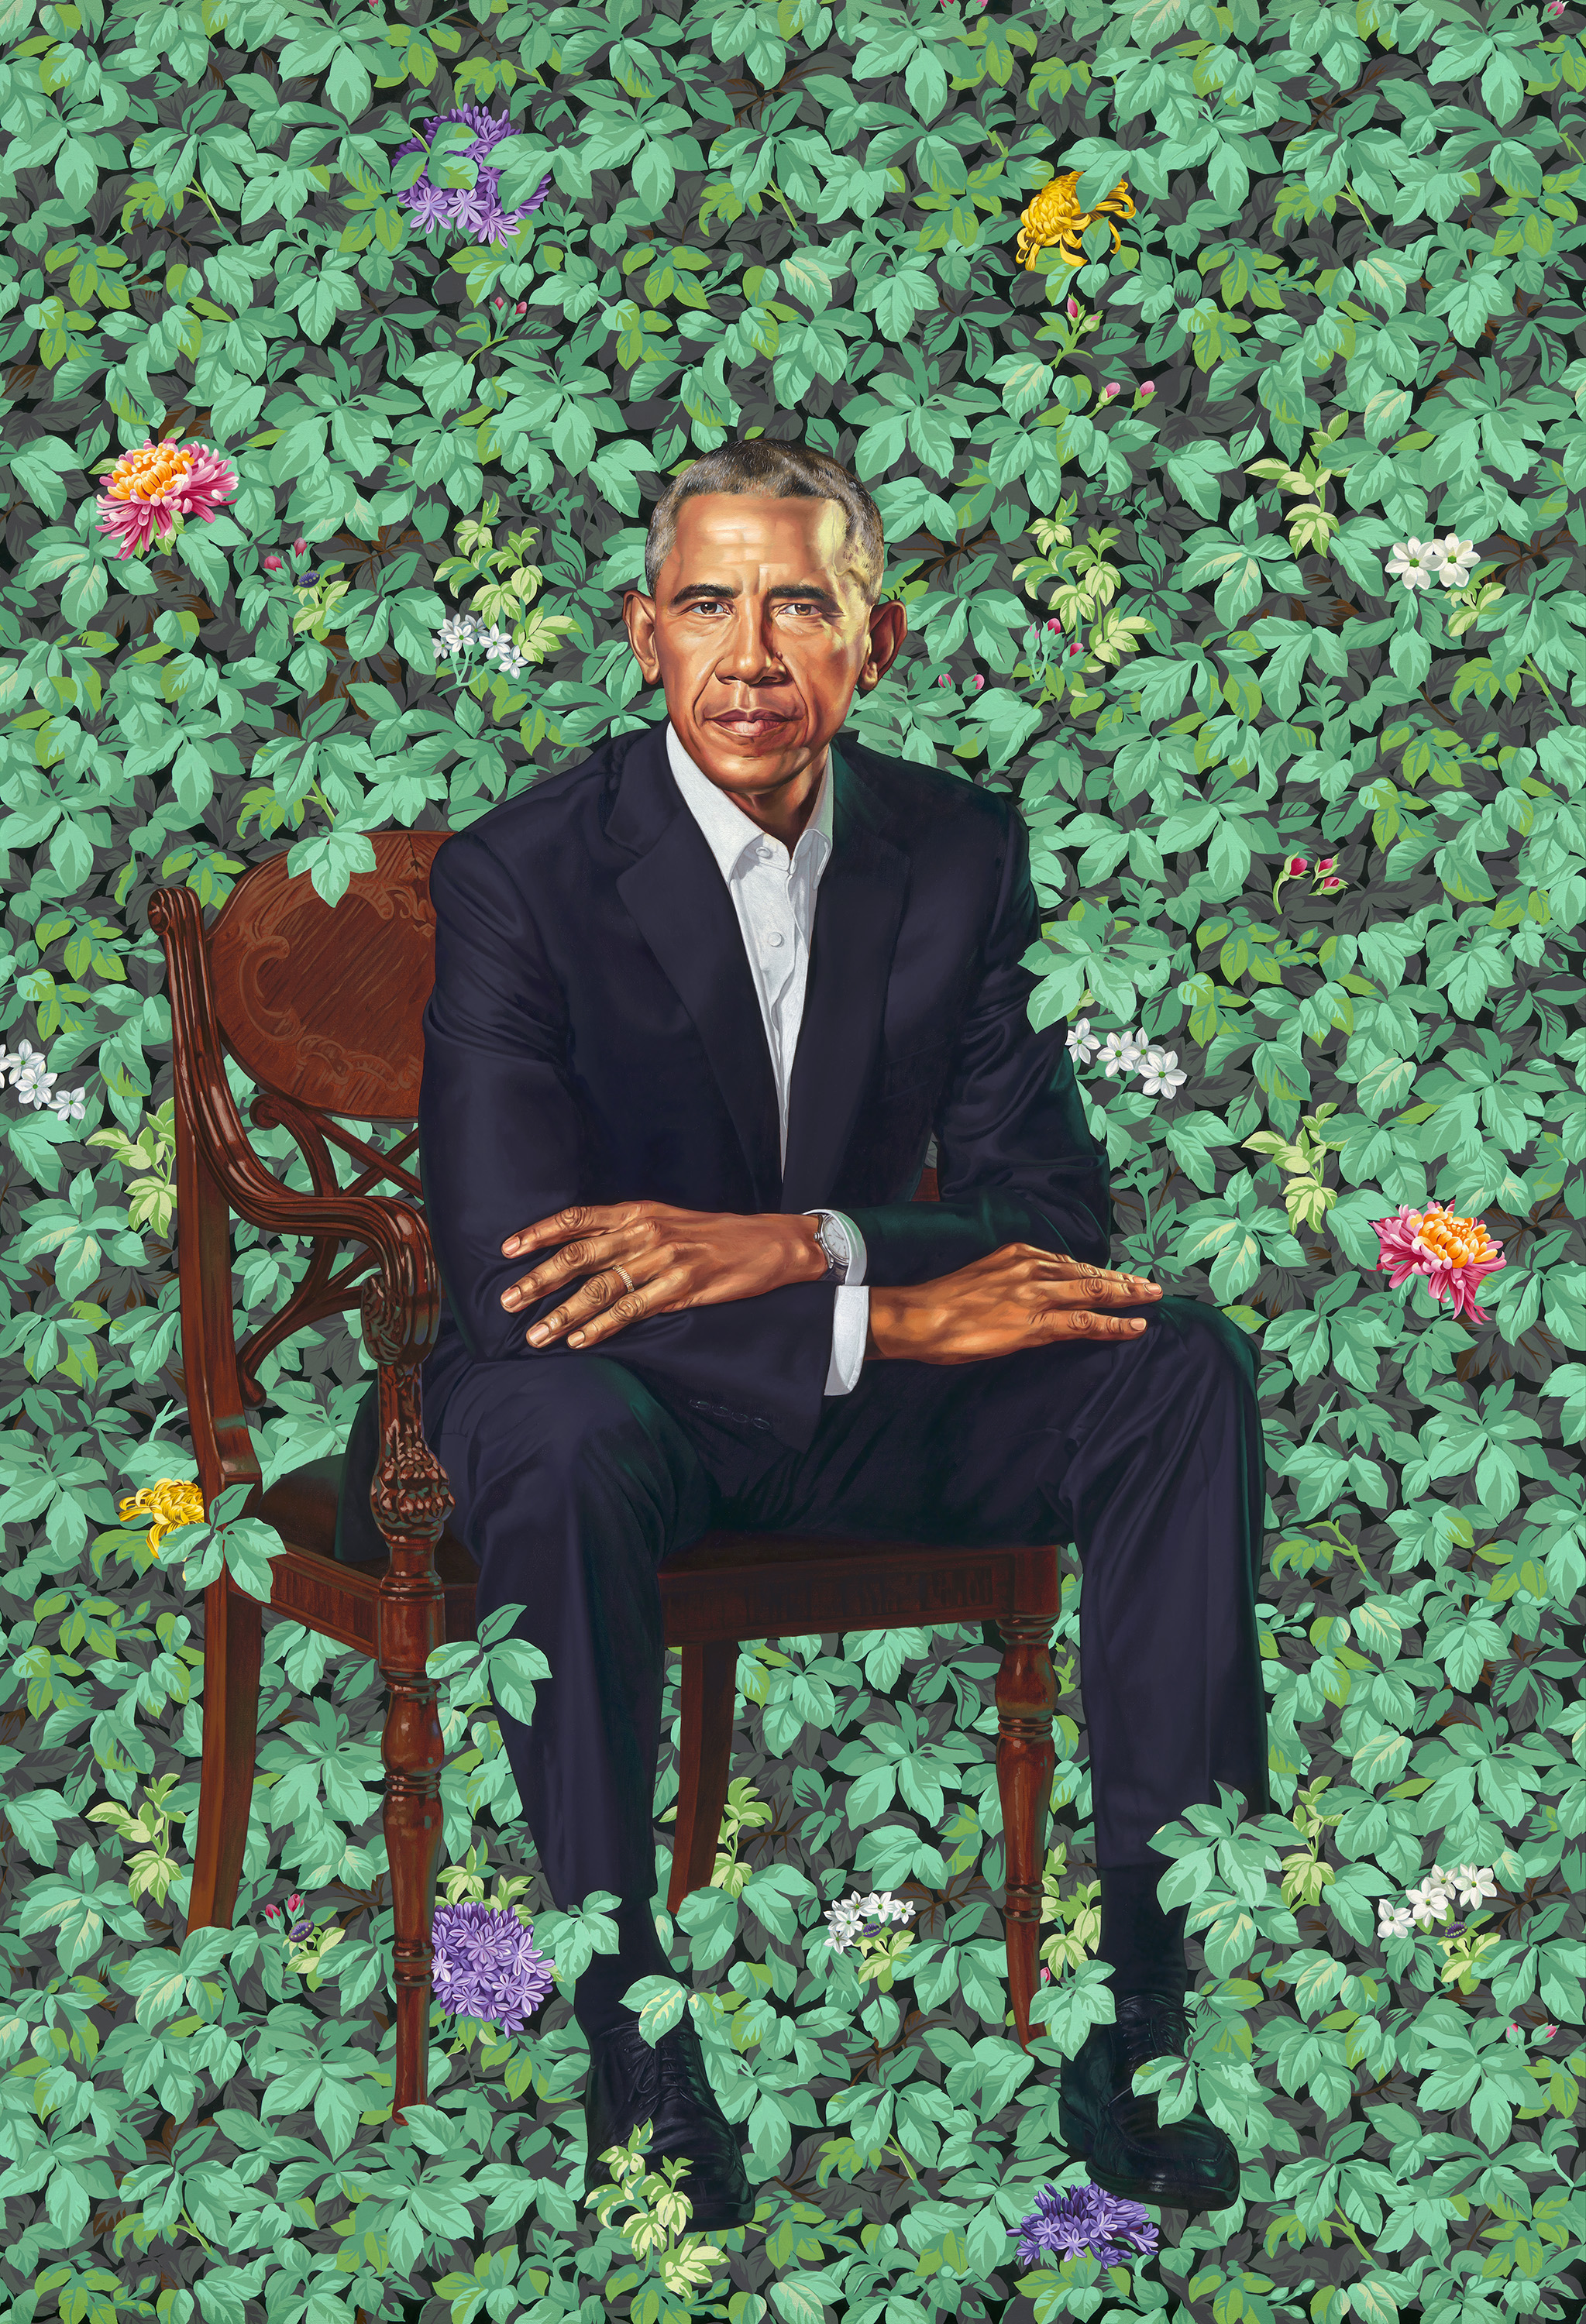 Официальный портрет 44-го президента США Барака Обамы. Художник: Кьянде Уайли. Холст, масло. 2018